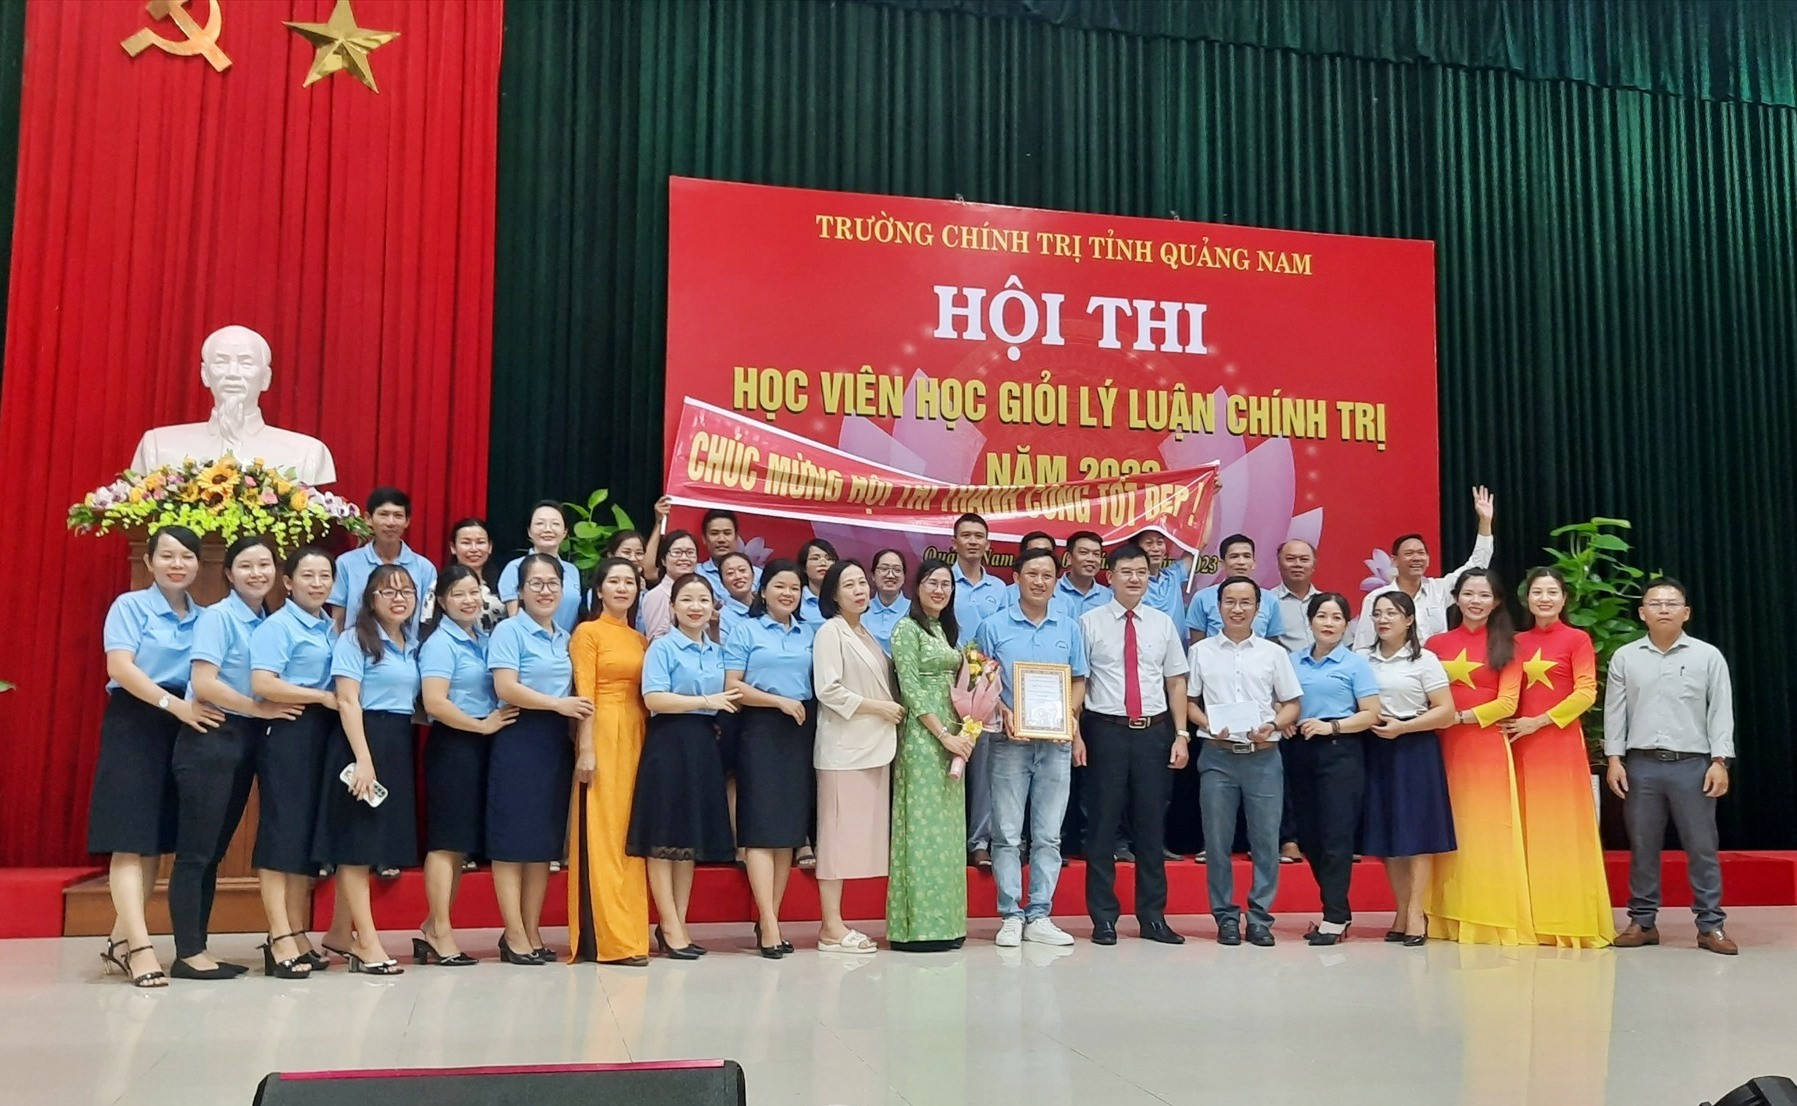 Ban tổ chức trao giải nhất cho lớp trung cấp lý luận chính trị khóa 9, huyện Núi Thành. Ảnh: Trường Chính trị tỉnh